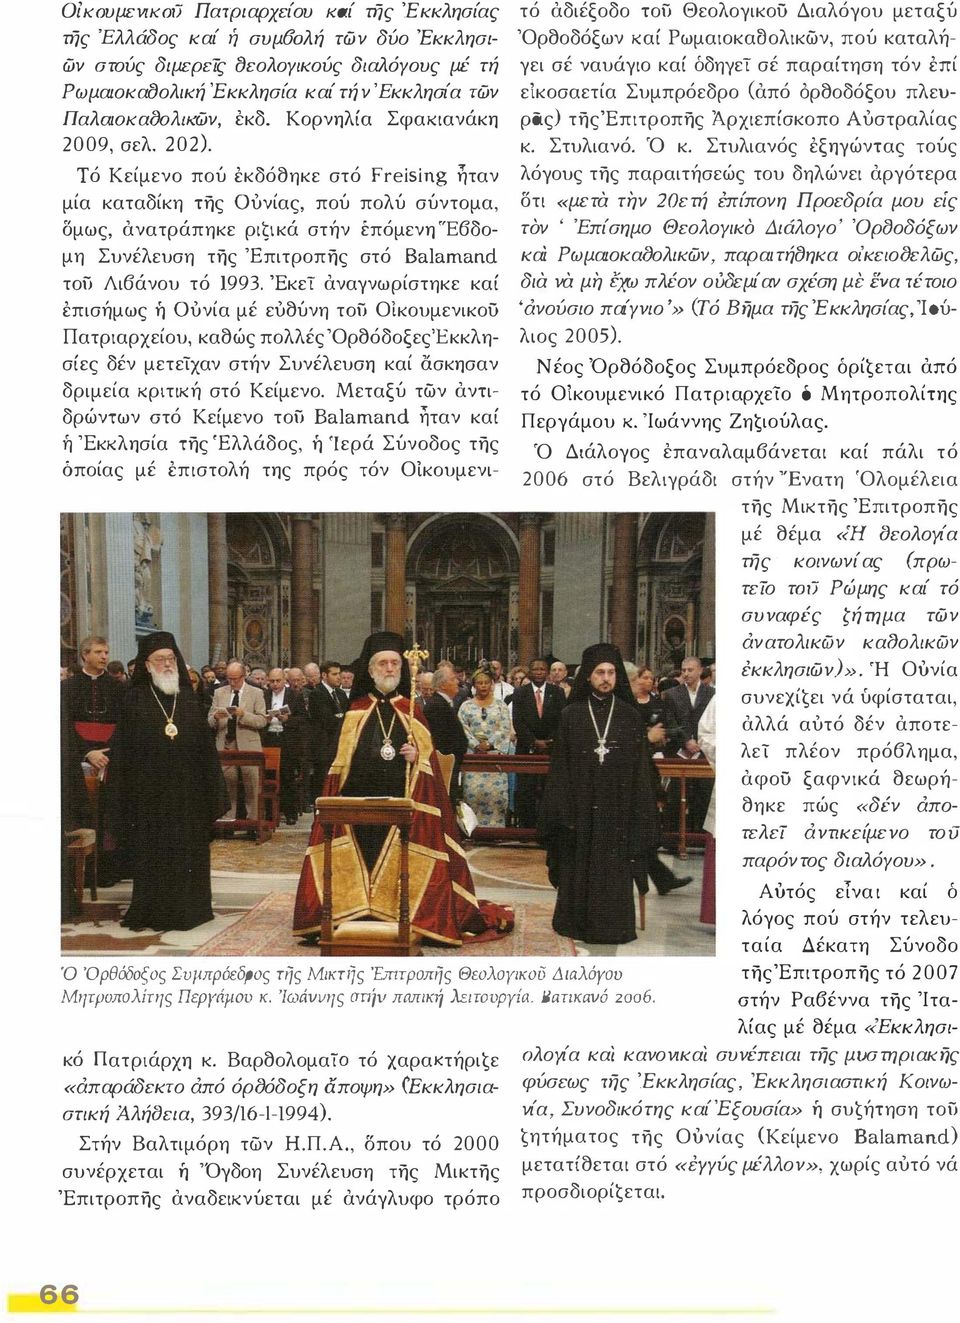 Αύτός είναι καί δ λόγος πού στήν τελευταία Δέκατη Σύνοδο τηςέπιτροπης τό 2007 ατήν Ρα6έννα της 'Ιταλίας μέ θέμα «Εκκλησικό Πατριάρχη κ.